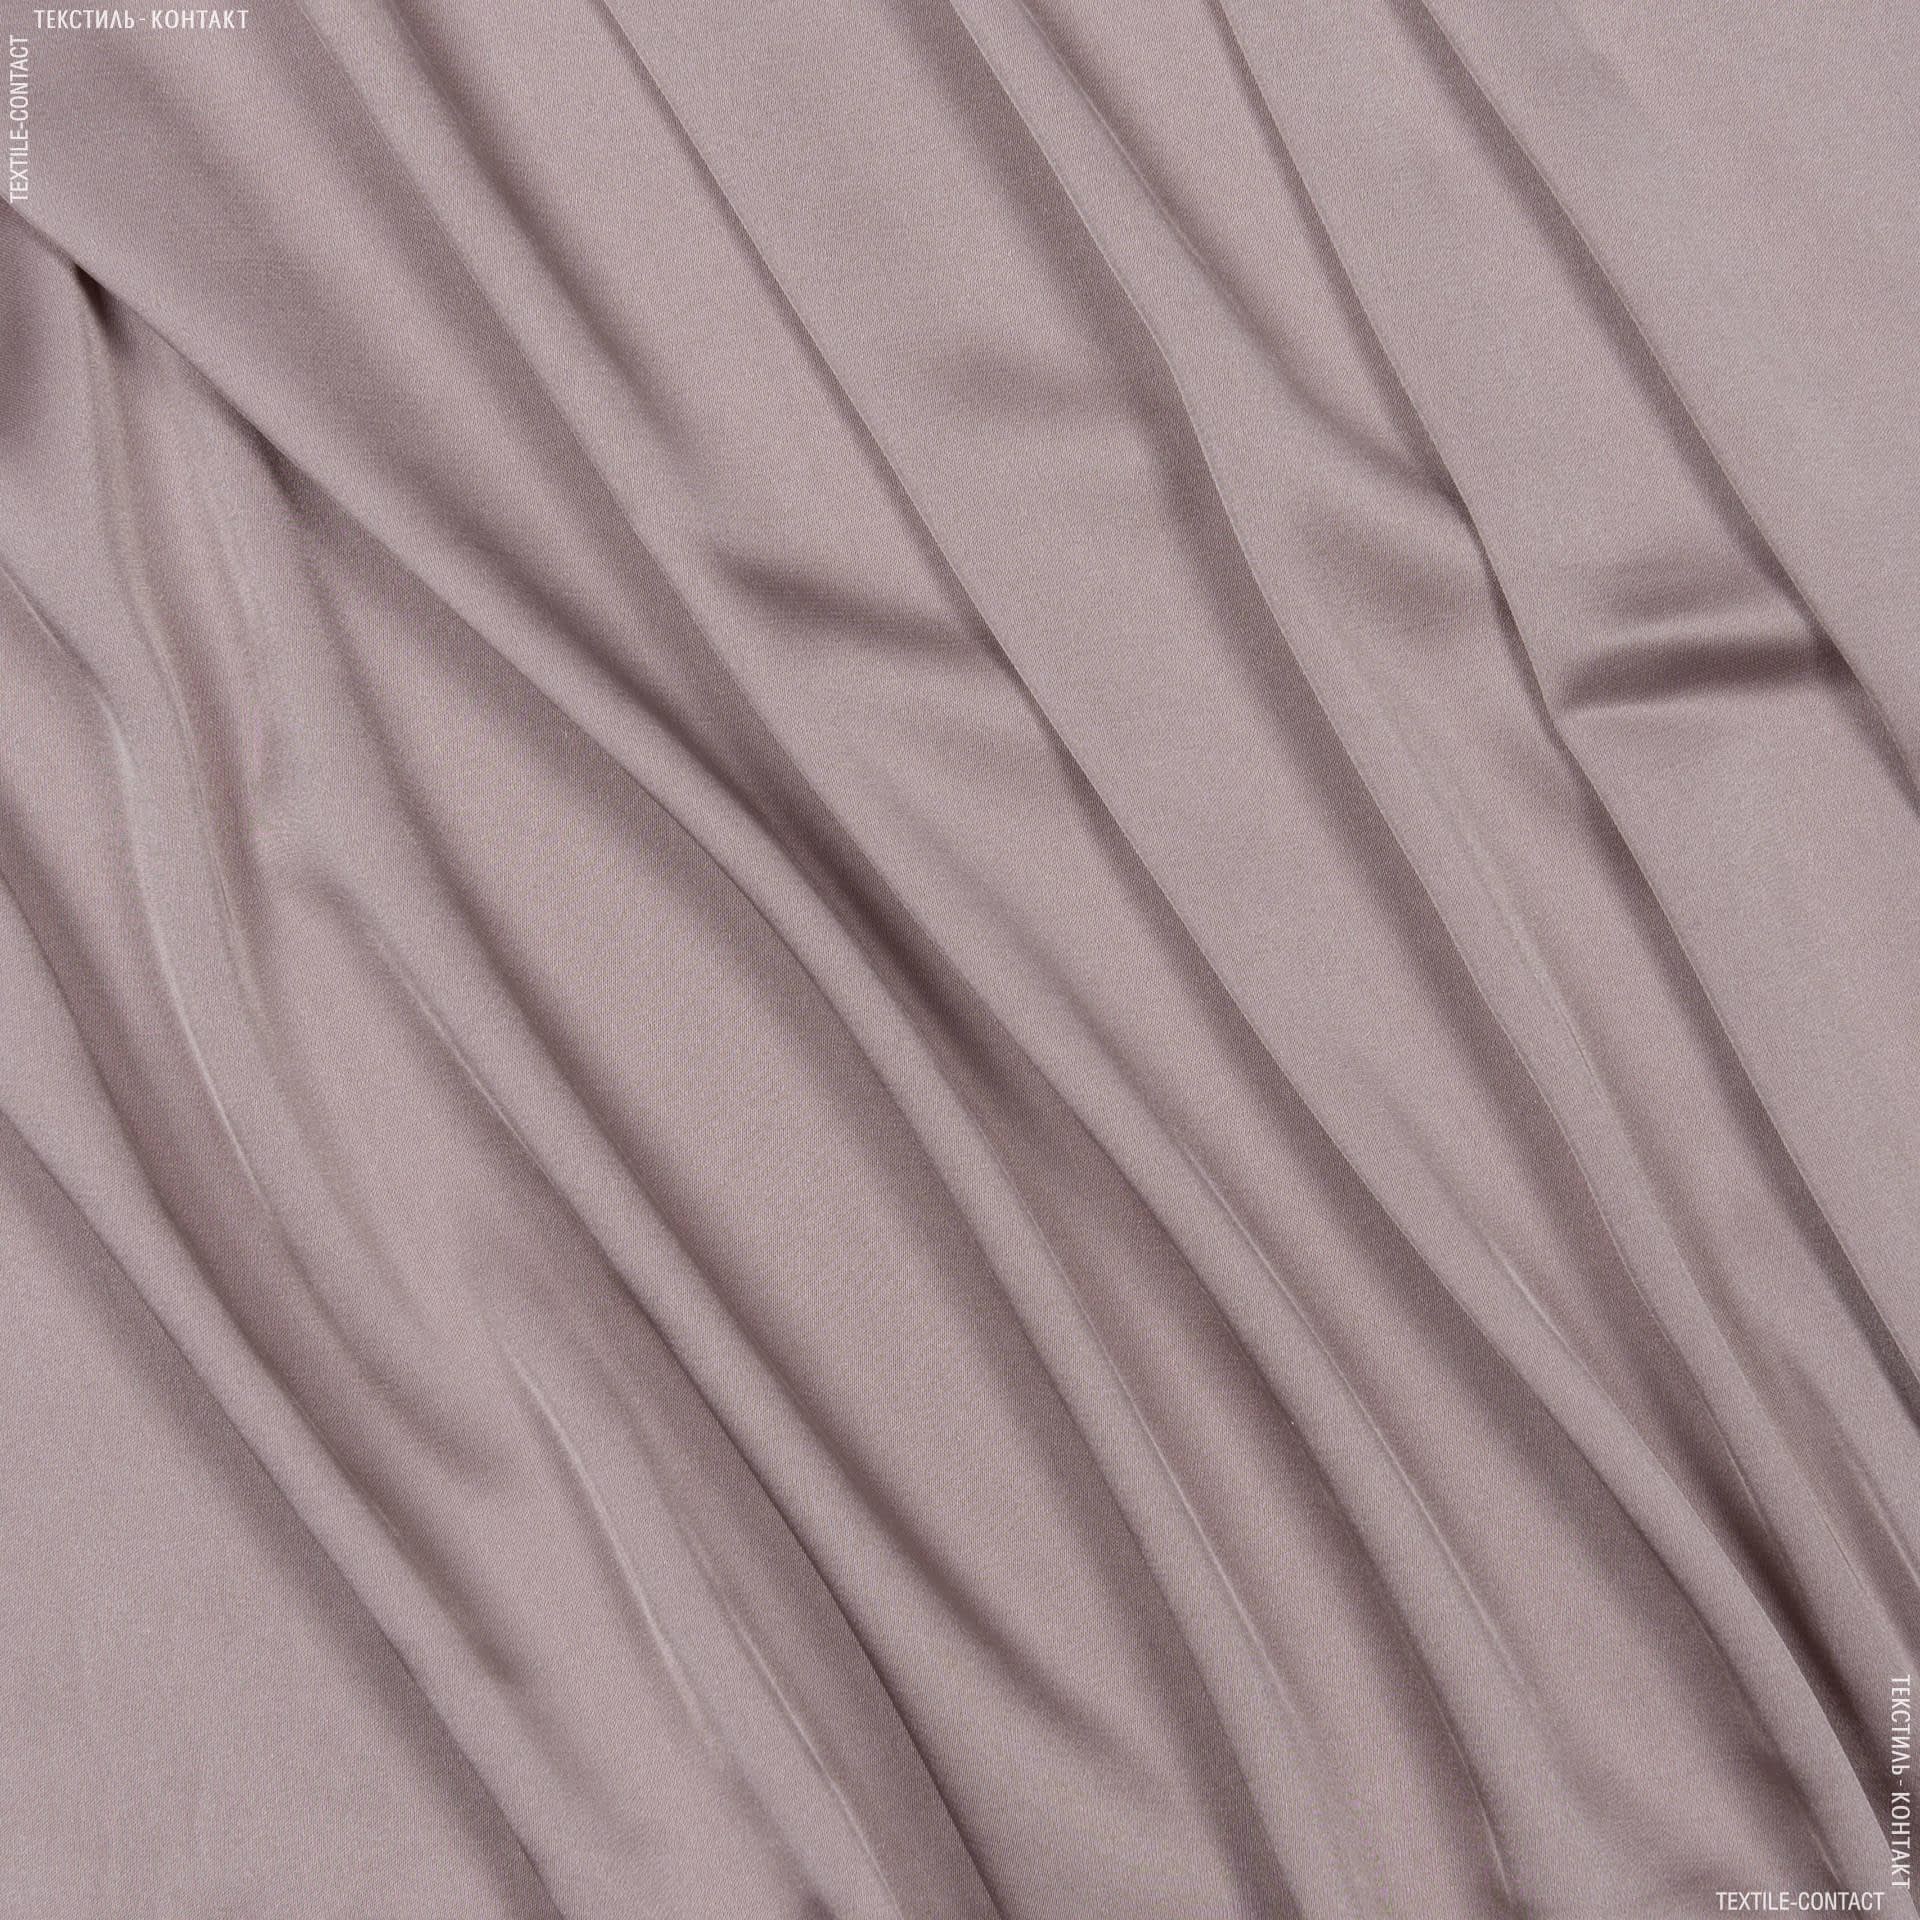 Тканини для хусток та бандан - Шовк штучний стрейч рожево-палевий